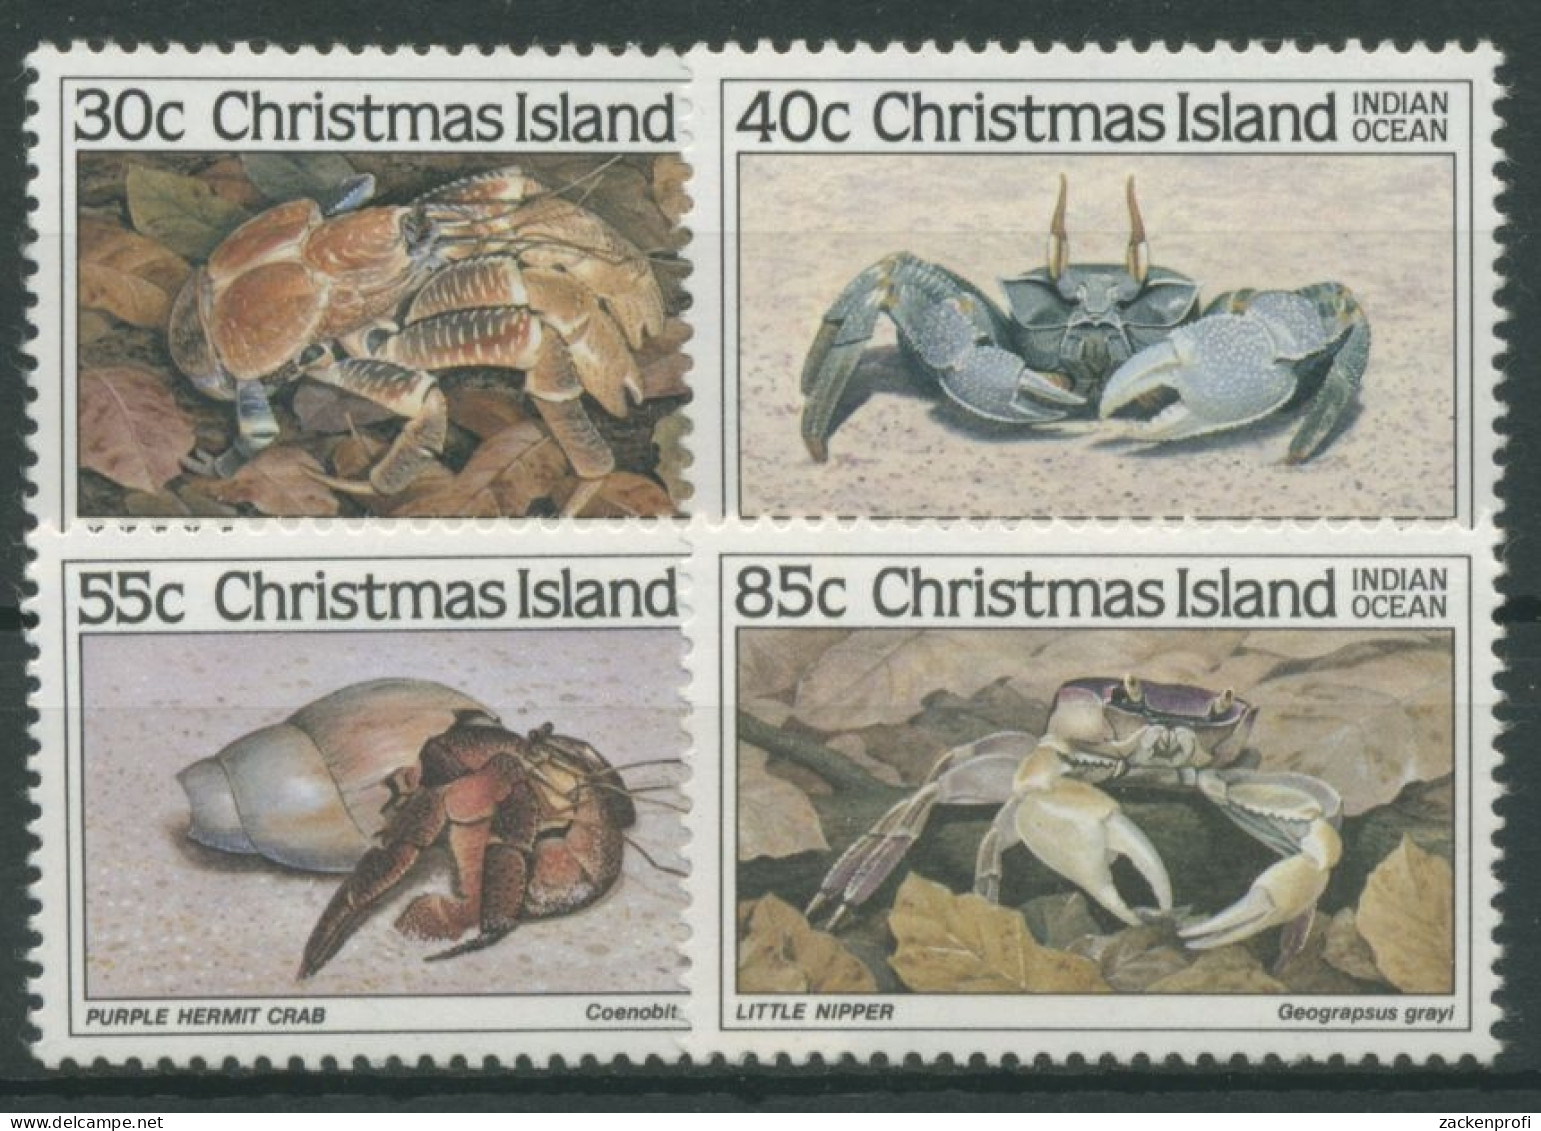 Weihnachts-Insel 1985 Tiere Krebse Krabben 199/02 Postfrisch - Christmaseiland